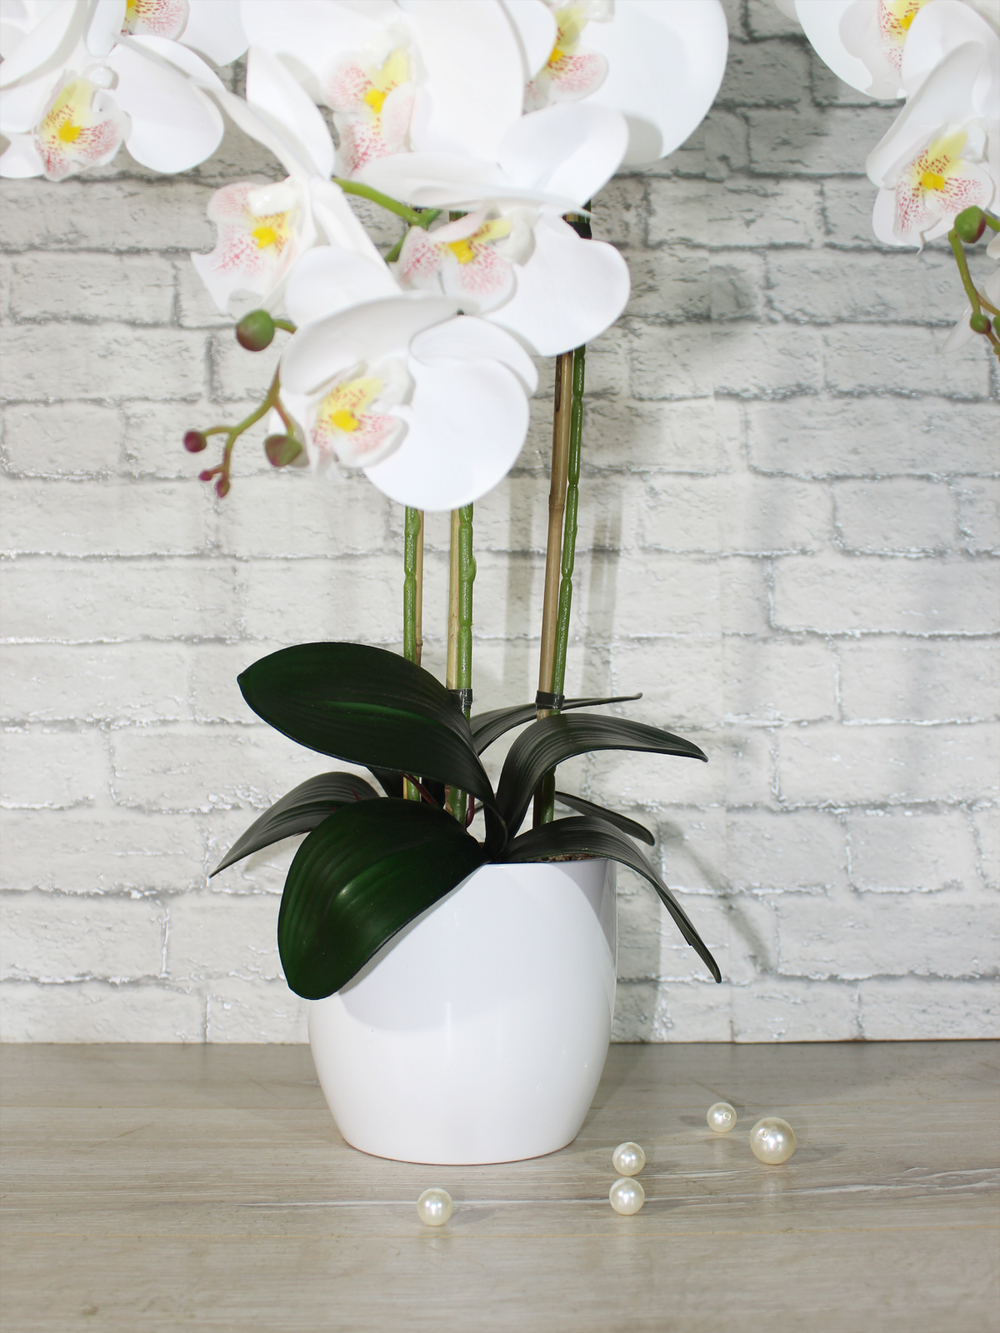 Искусственные цветы Орхидеи Люкс 3 ветки белые латекс 65см в кашпо